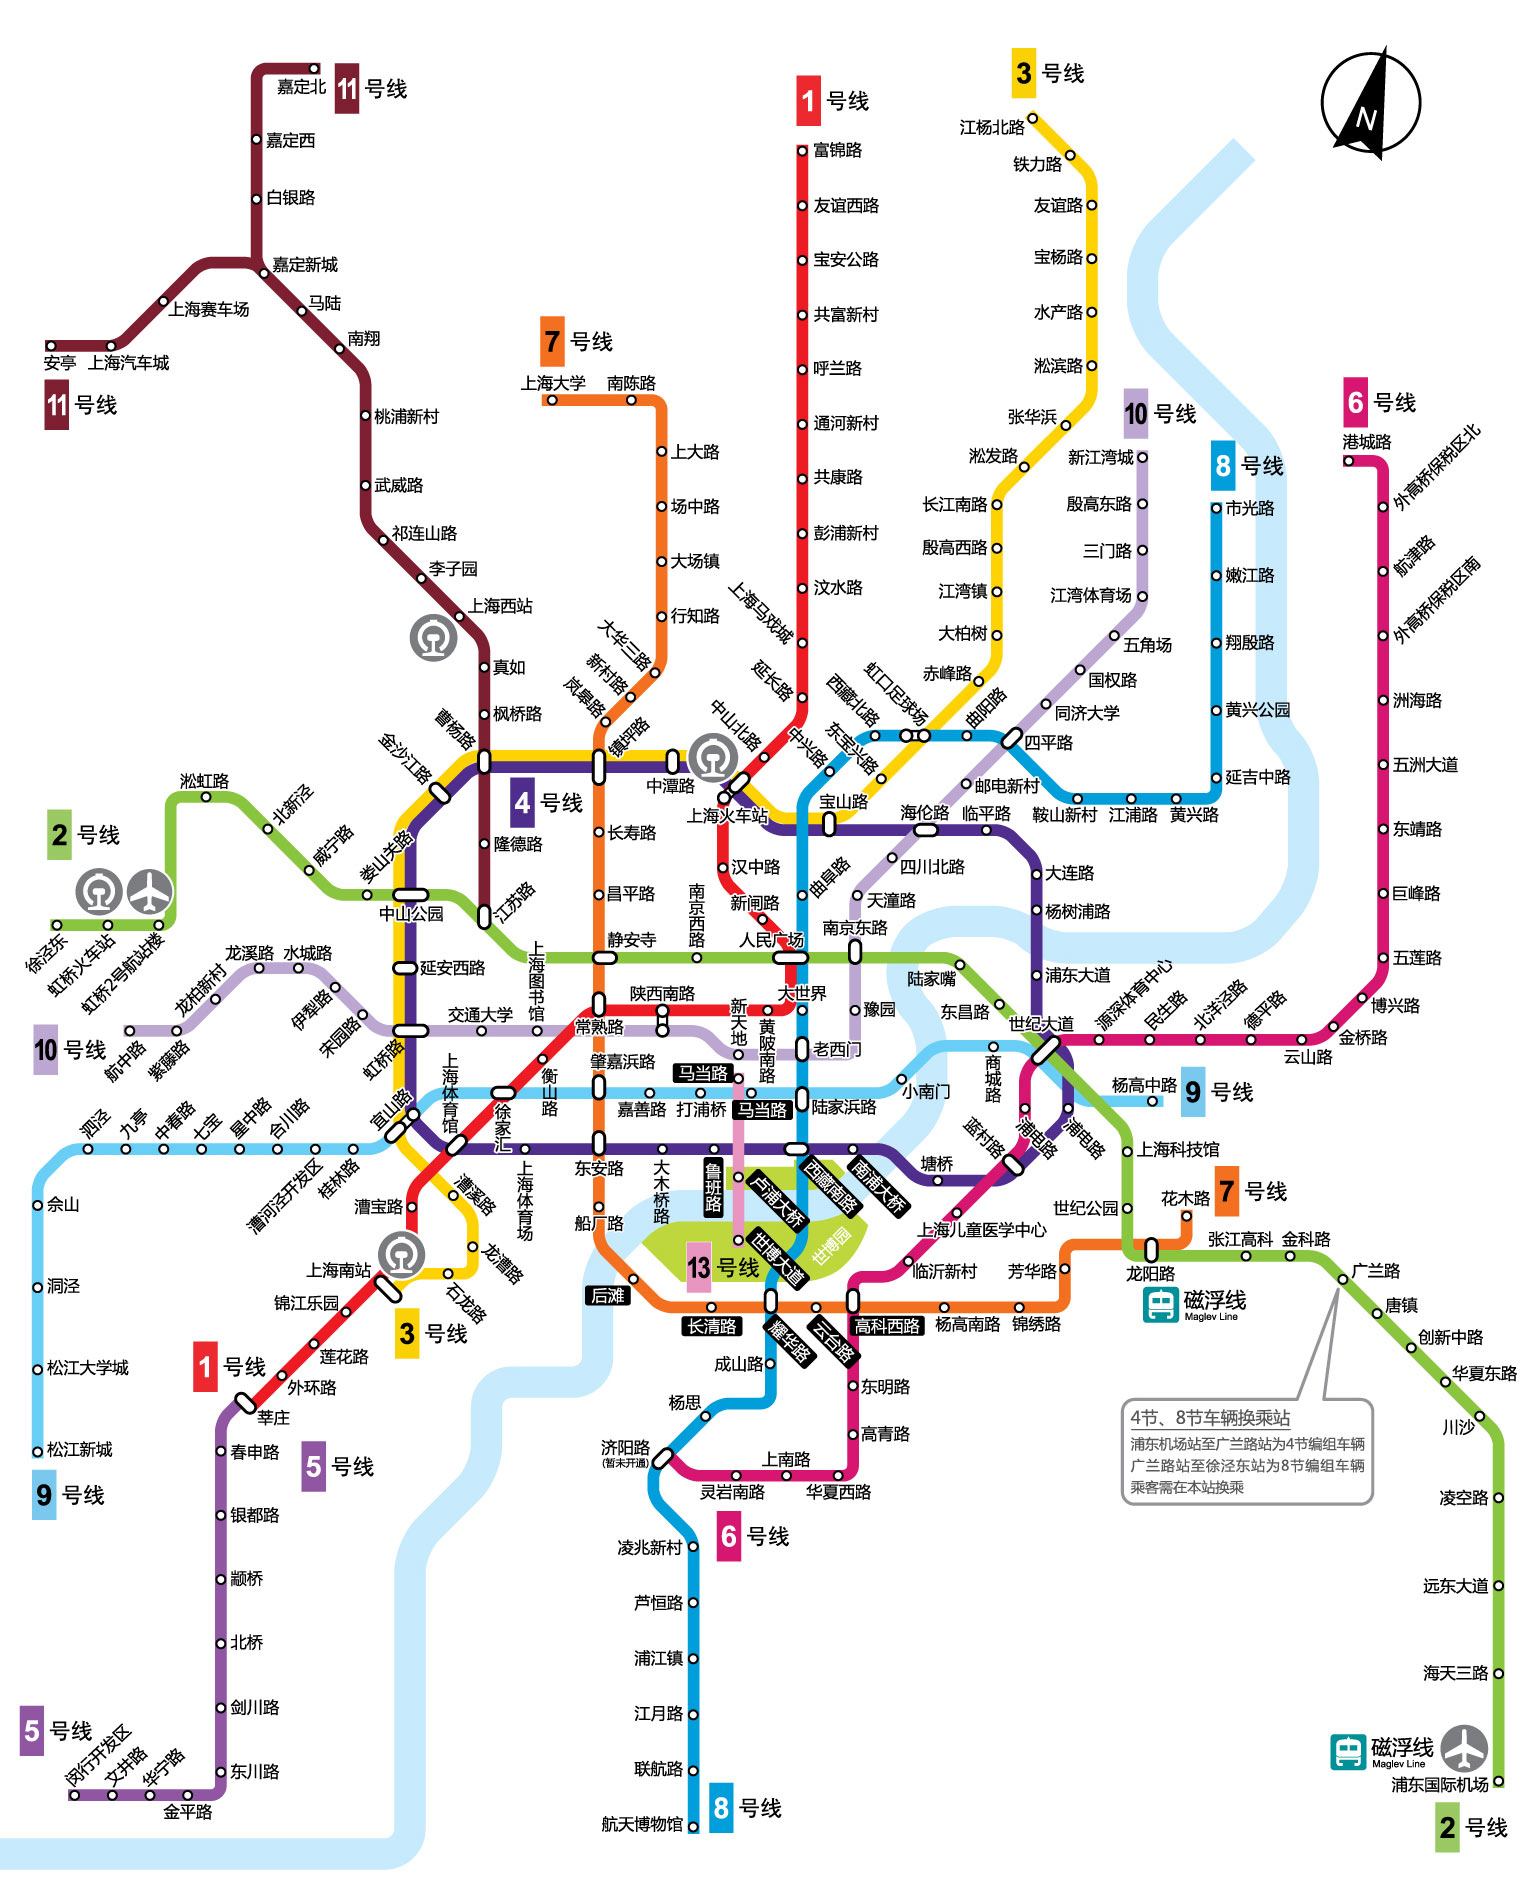 全新版 “上海地铁高清大图” 亮相_新浪上海_新浪网